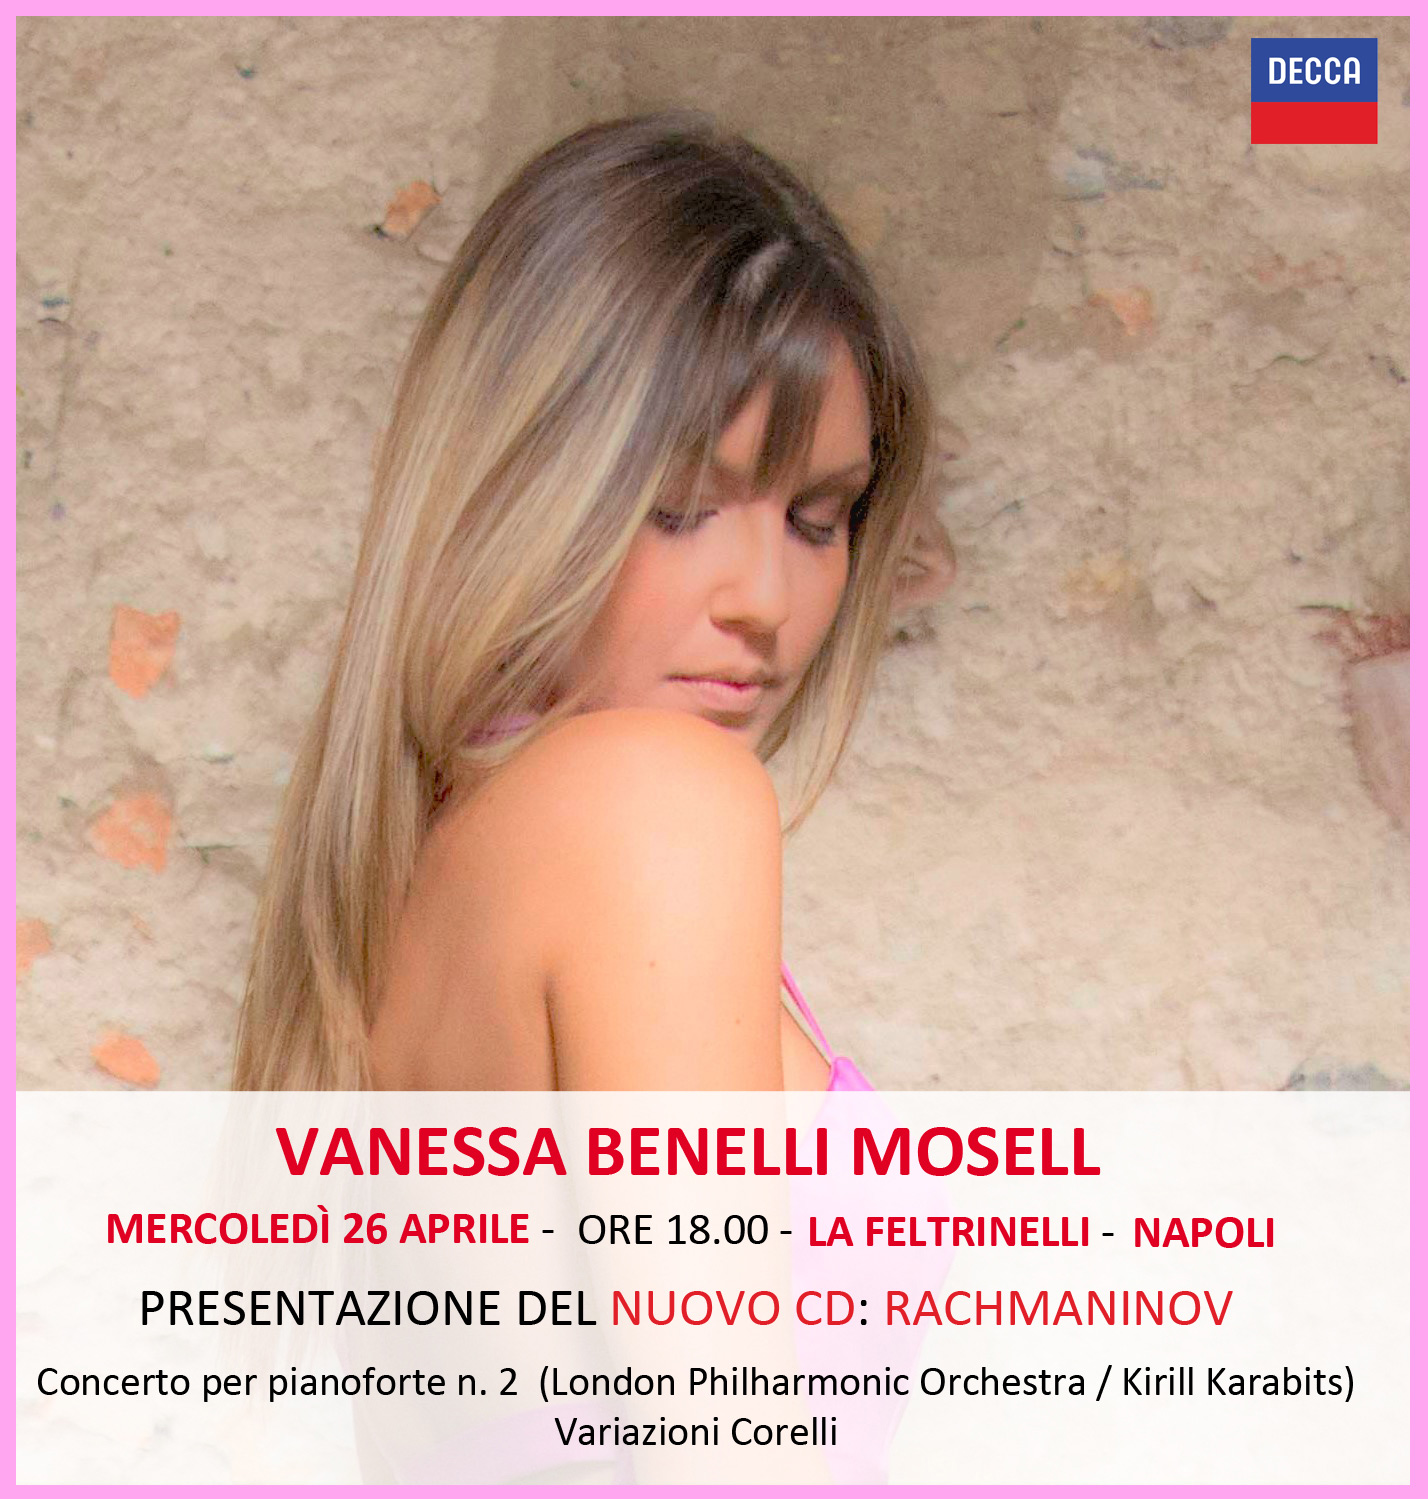 Vanessa Benelli Mosell mercoledì 26 aprile a Napoli